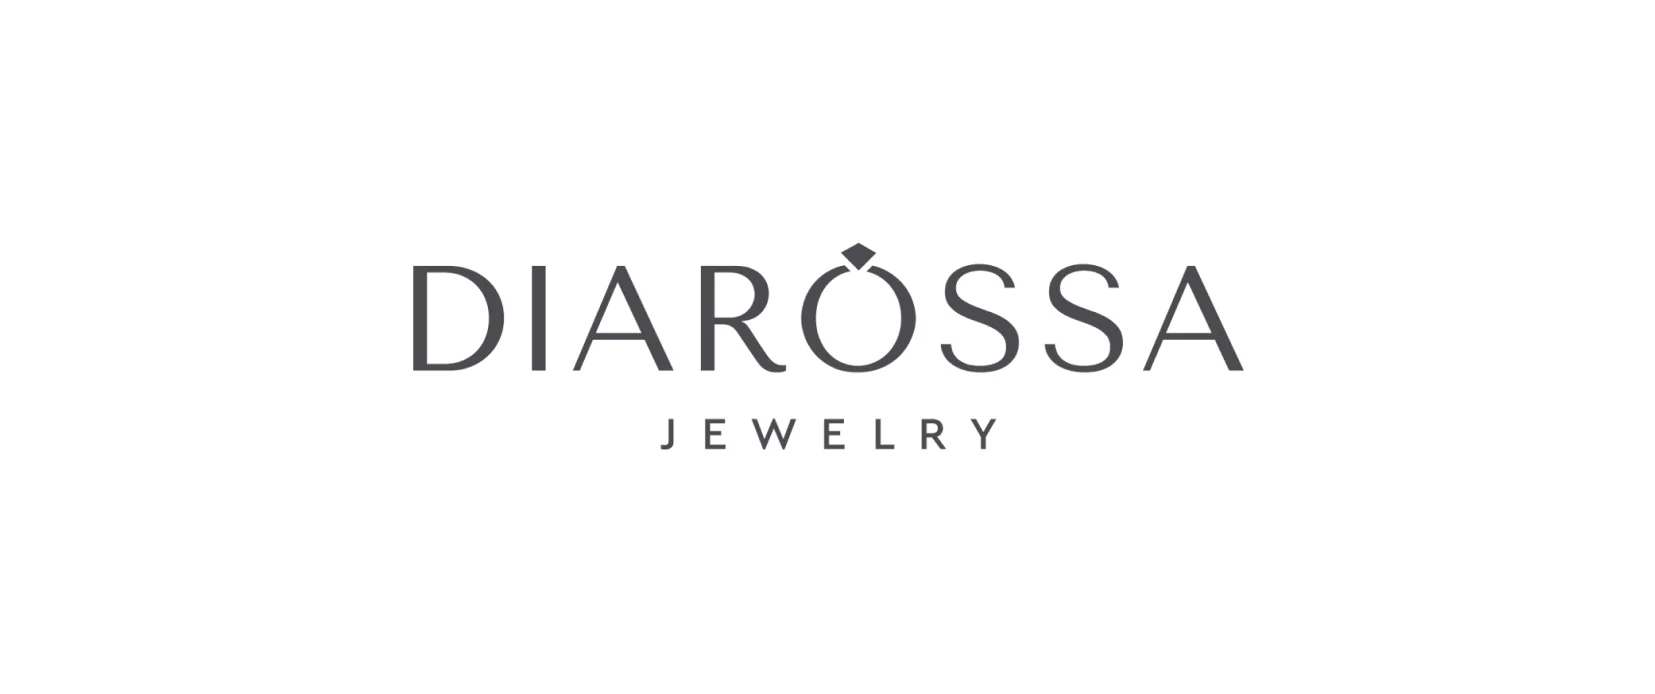 Diarossa - сеть ювелирных магазинов